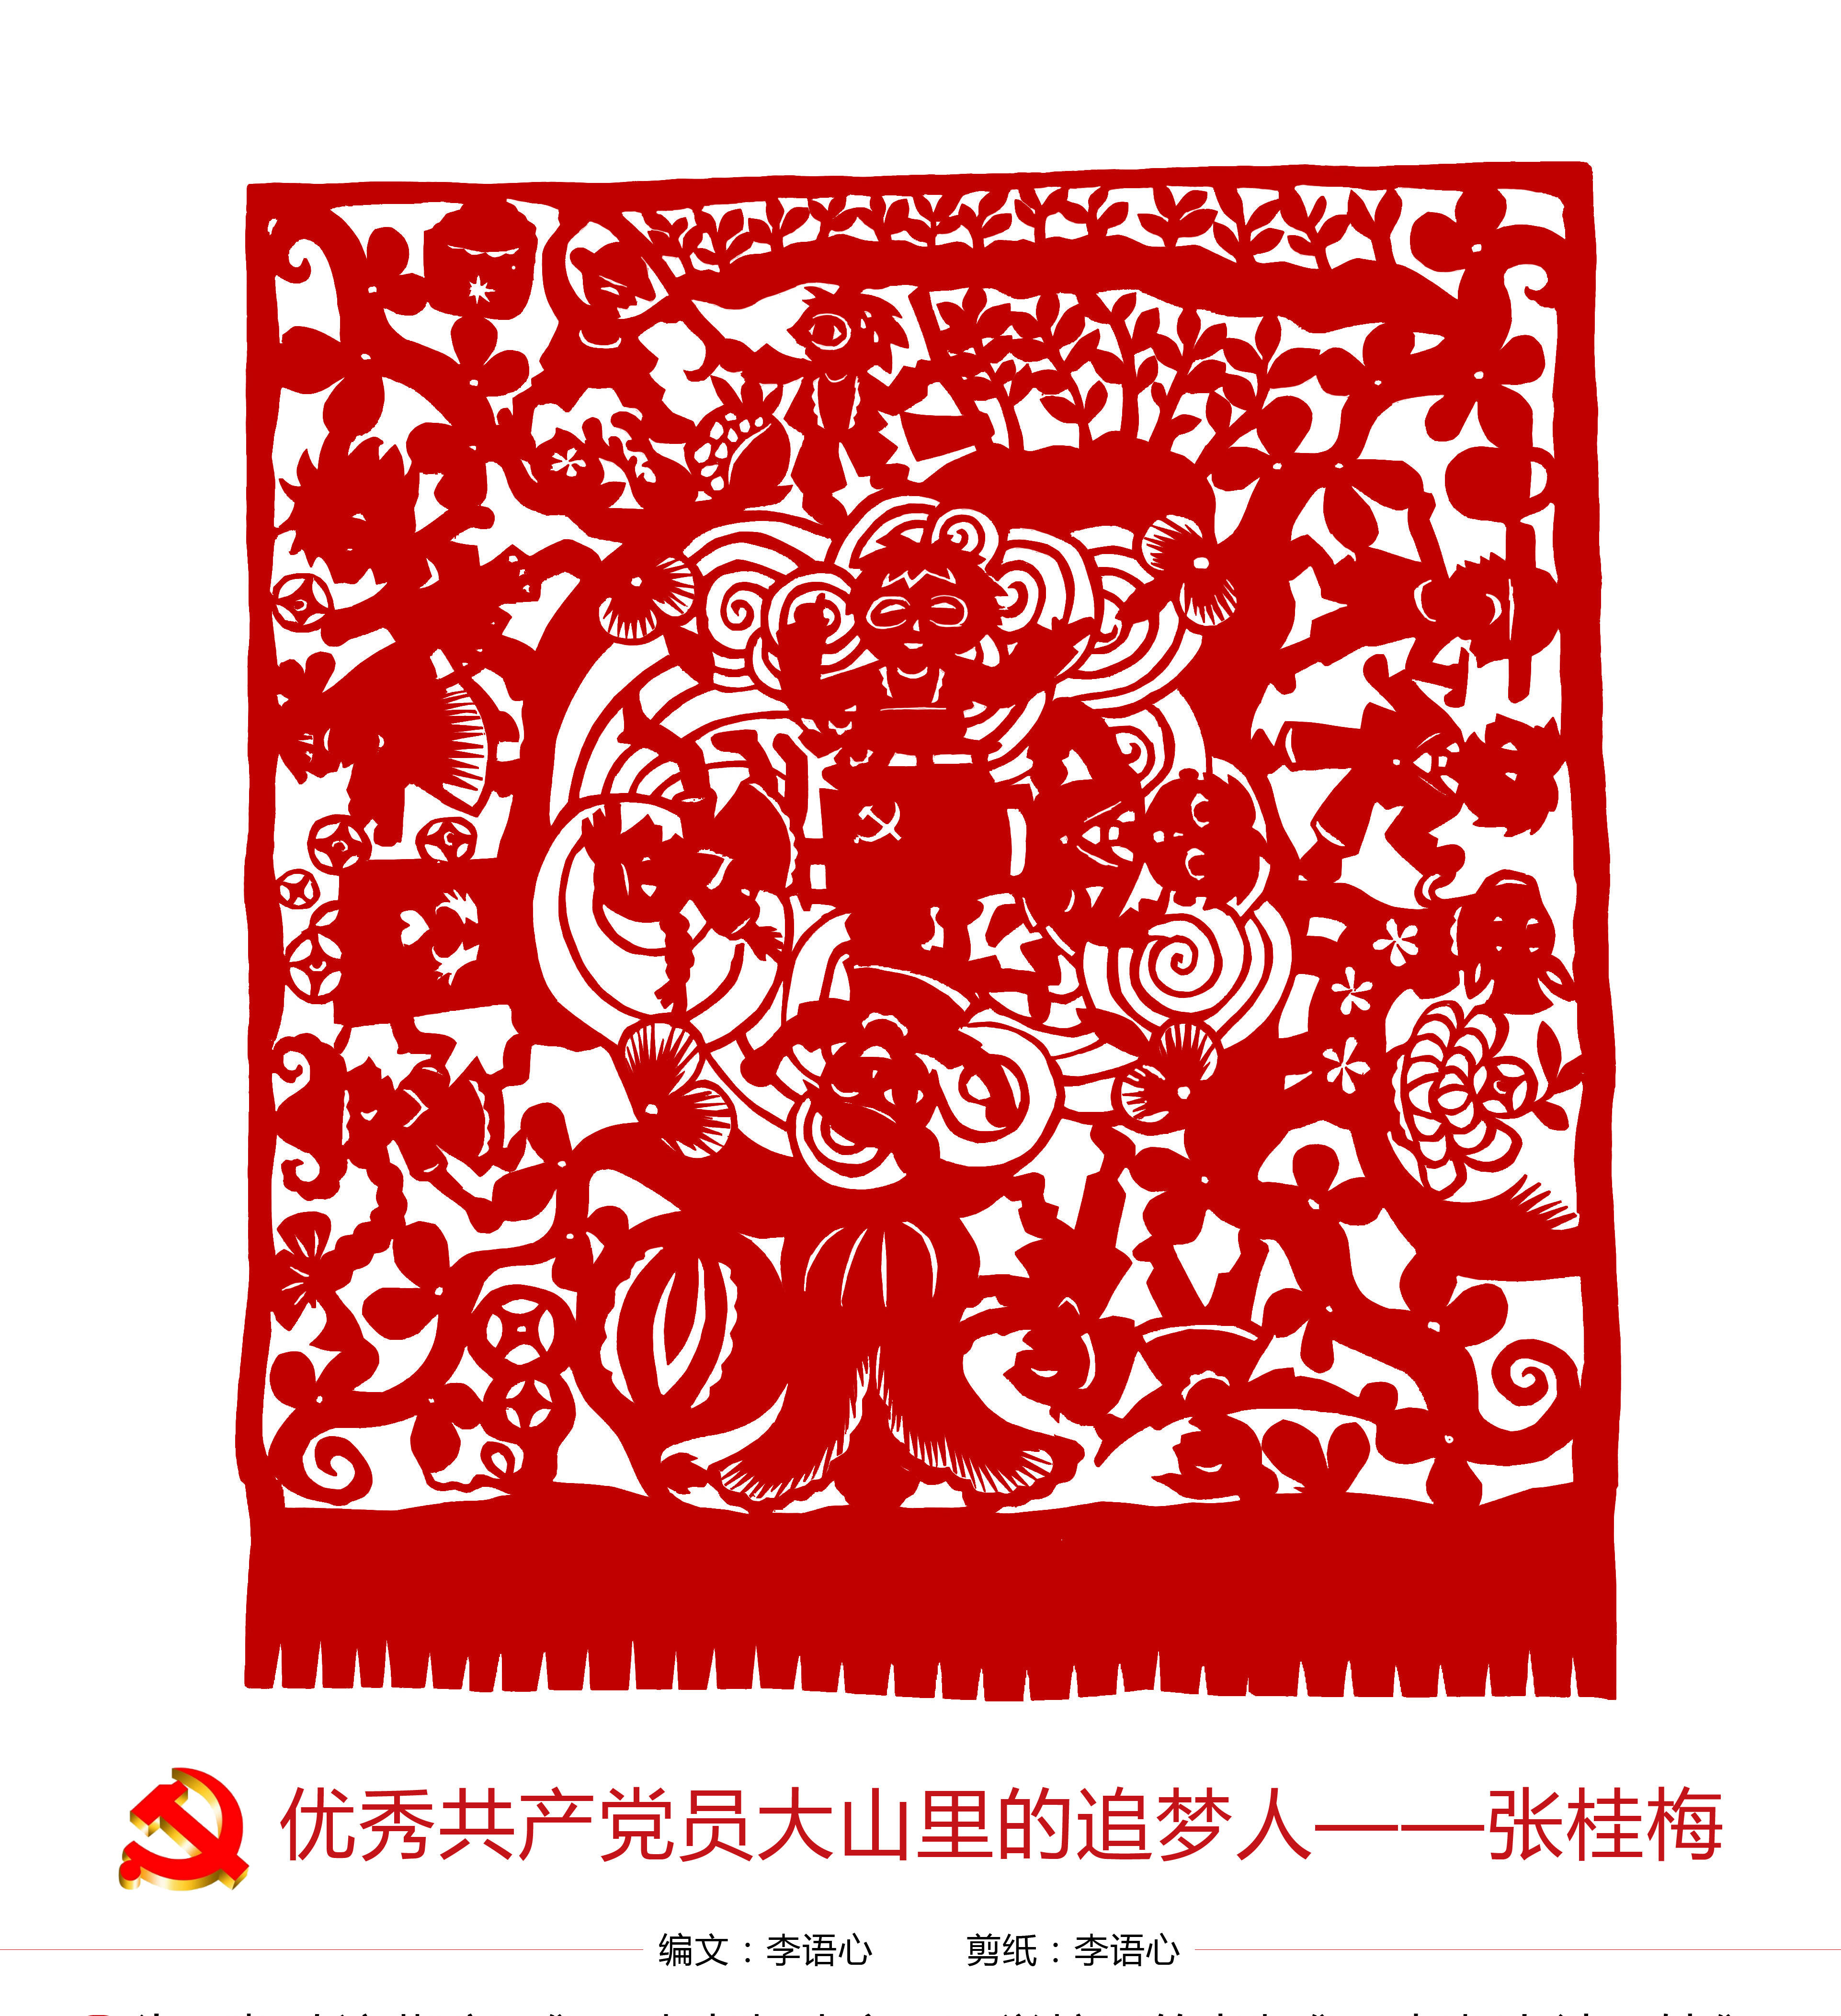 小小传承人剪纸作品致敬感动中国十大人物主人公张桂梅